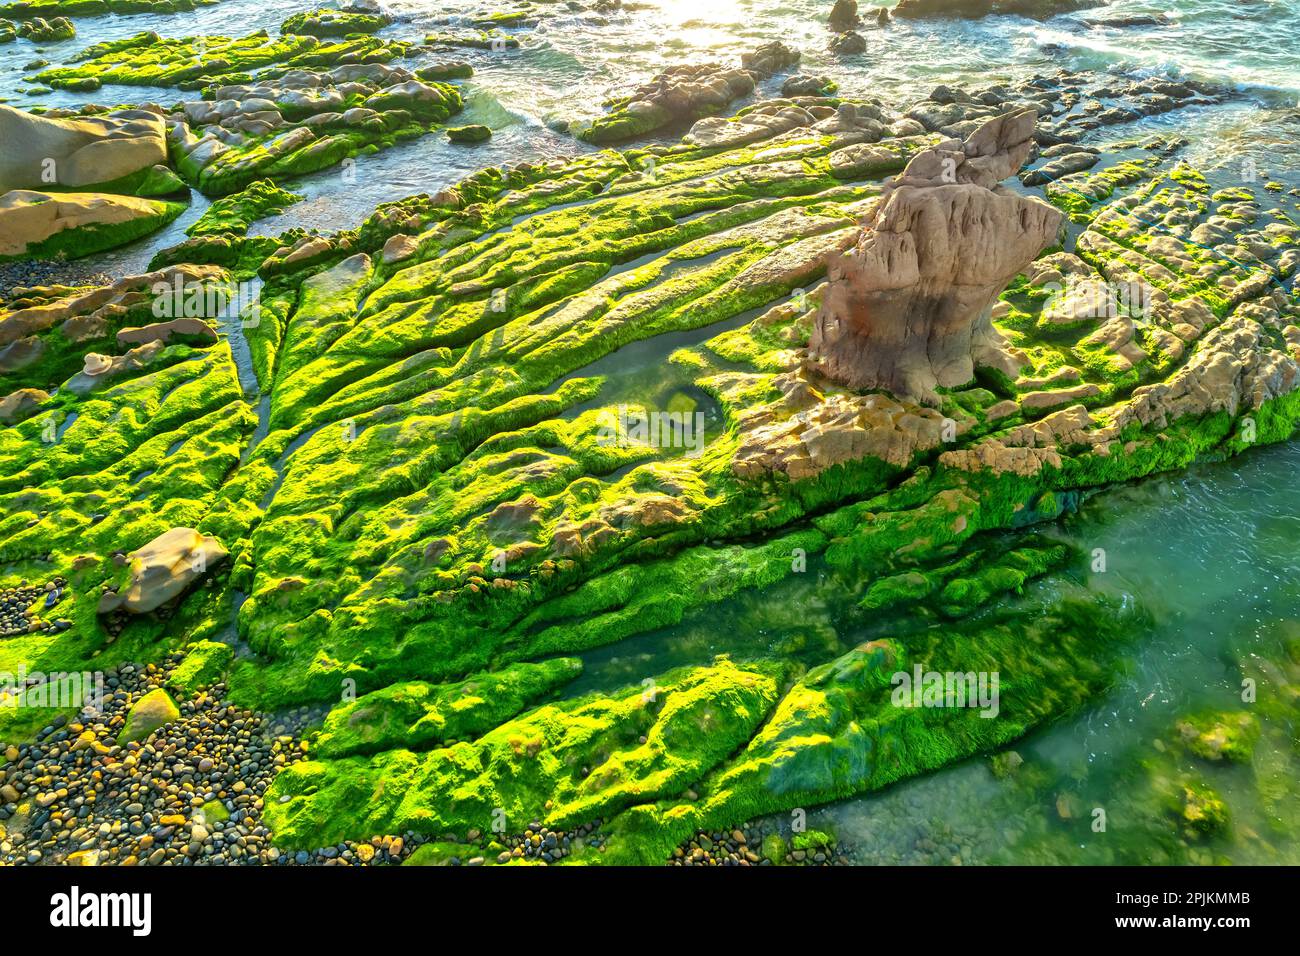 Incredibile di roccia e muschio alla spiaggia di Co Thach, Tuy Phong, provincia di Binh Thuan, Vietnam, Seascape del Vietnam rocce strane. Foto Stock